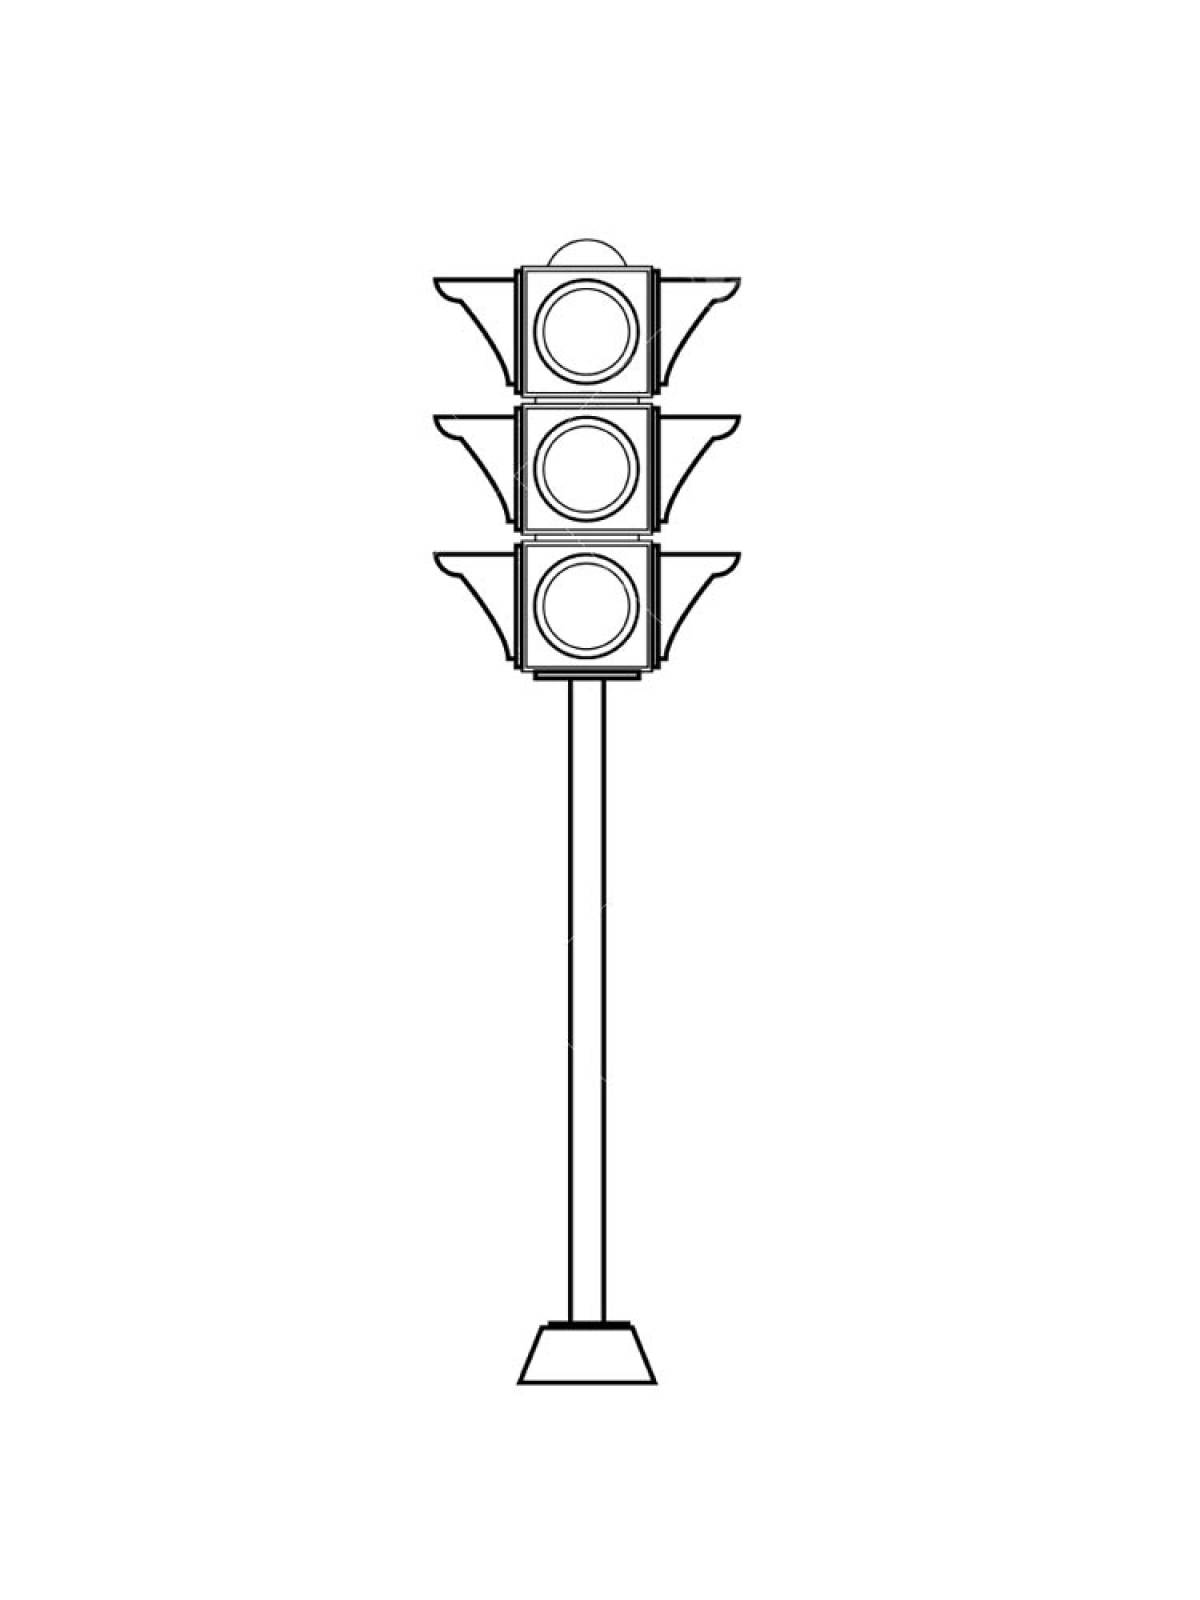 Traffic light 6